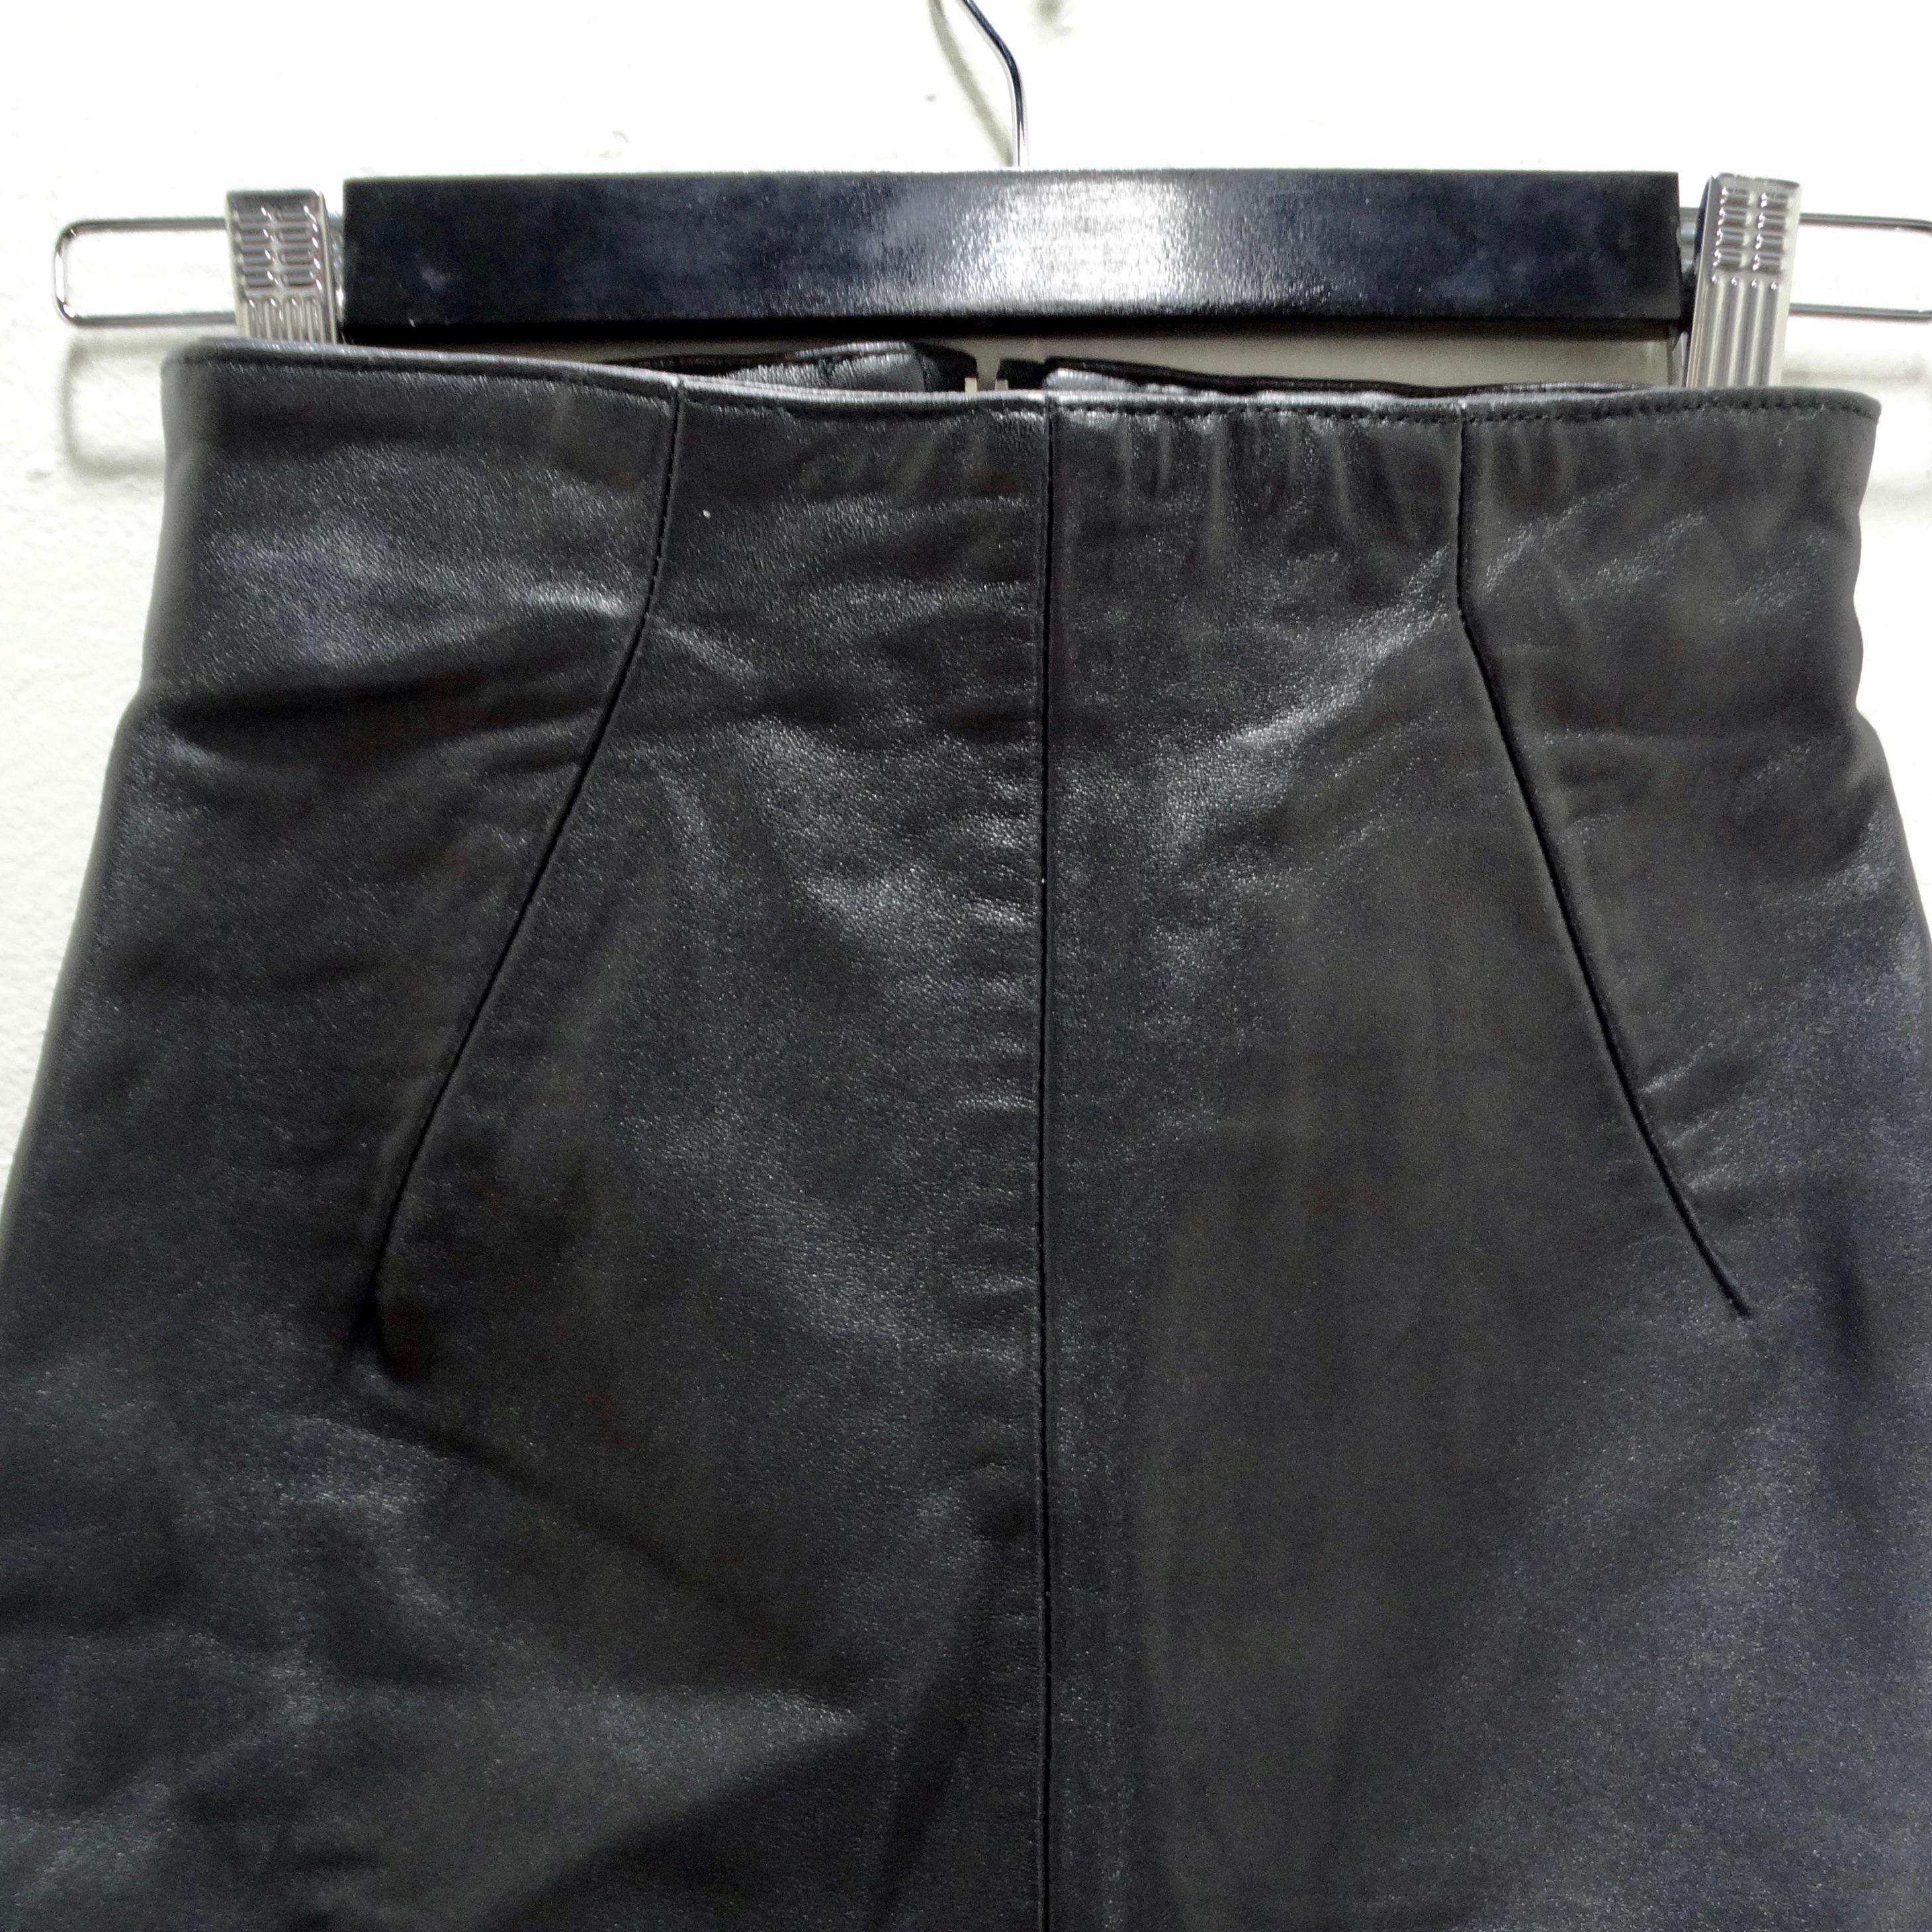 La mini-jupe en cuir noir Michael Hoban des années 1980 est une pièce remarquable et polyvalente qui allie harmonieusement l'élégance intemporelle à une touche d'avant-garde. Confectionnée avec précision et souci du détail, cette mini-jupe est